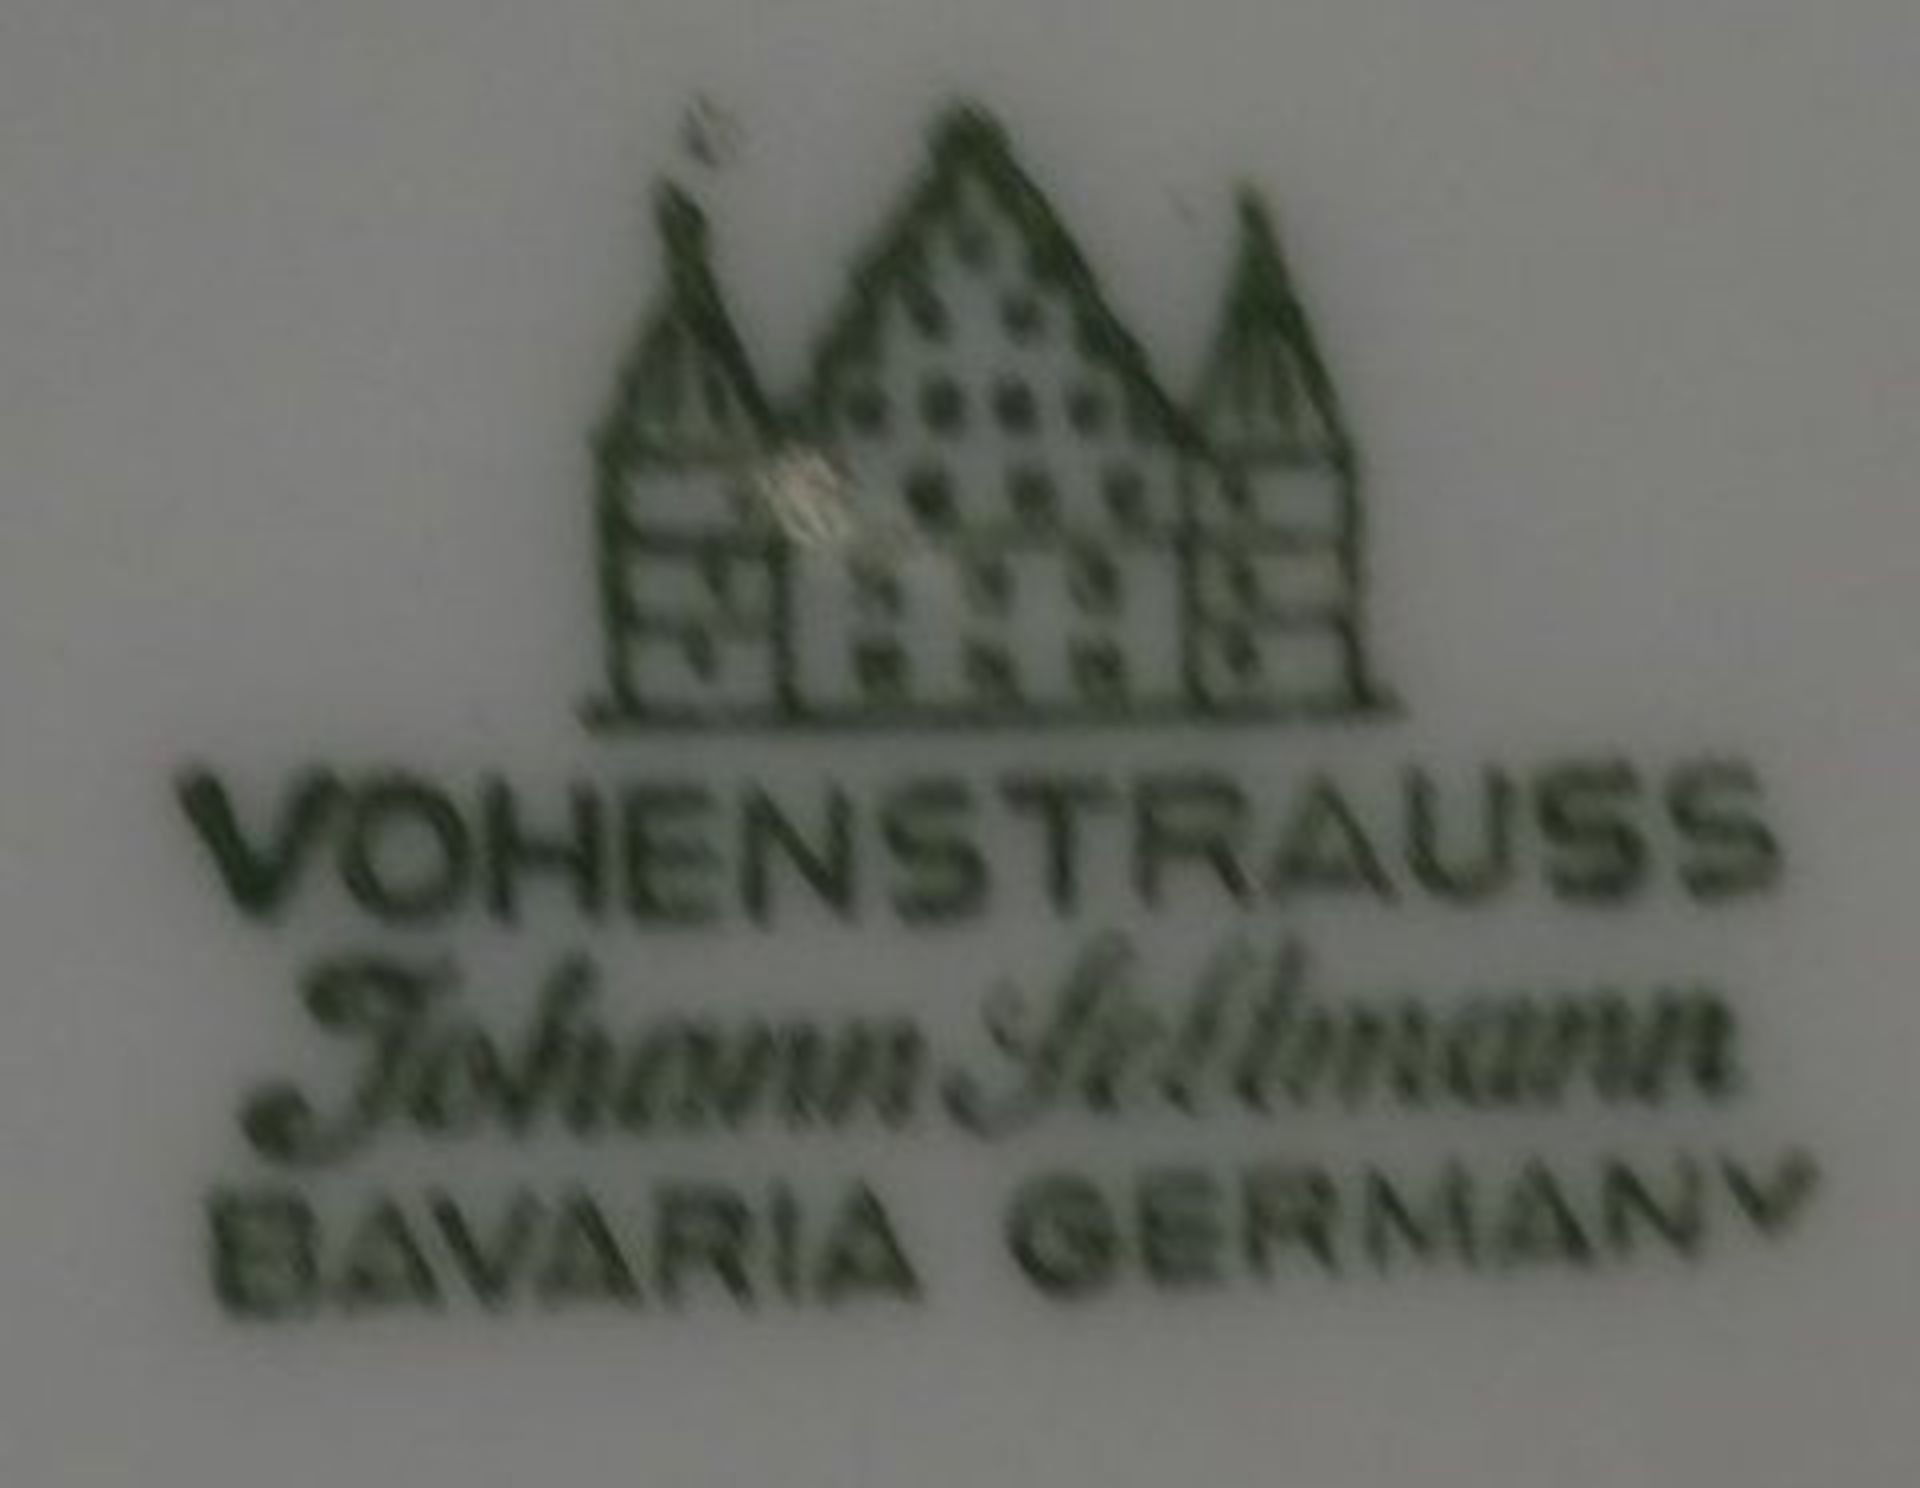 Deckelvase "Vohenstrauss" Goldblätter, H-28 c - Bild 3 aus 3